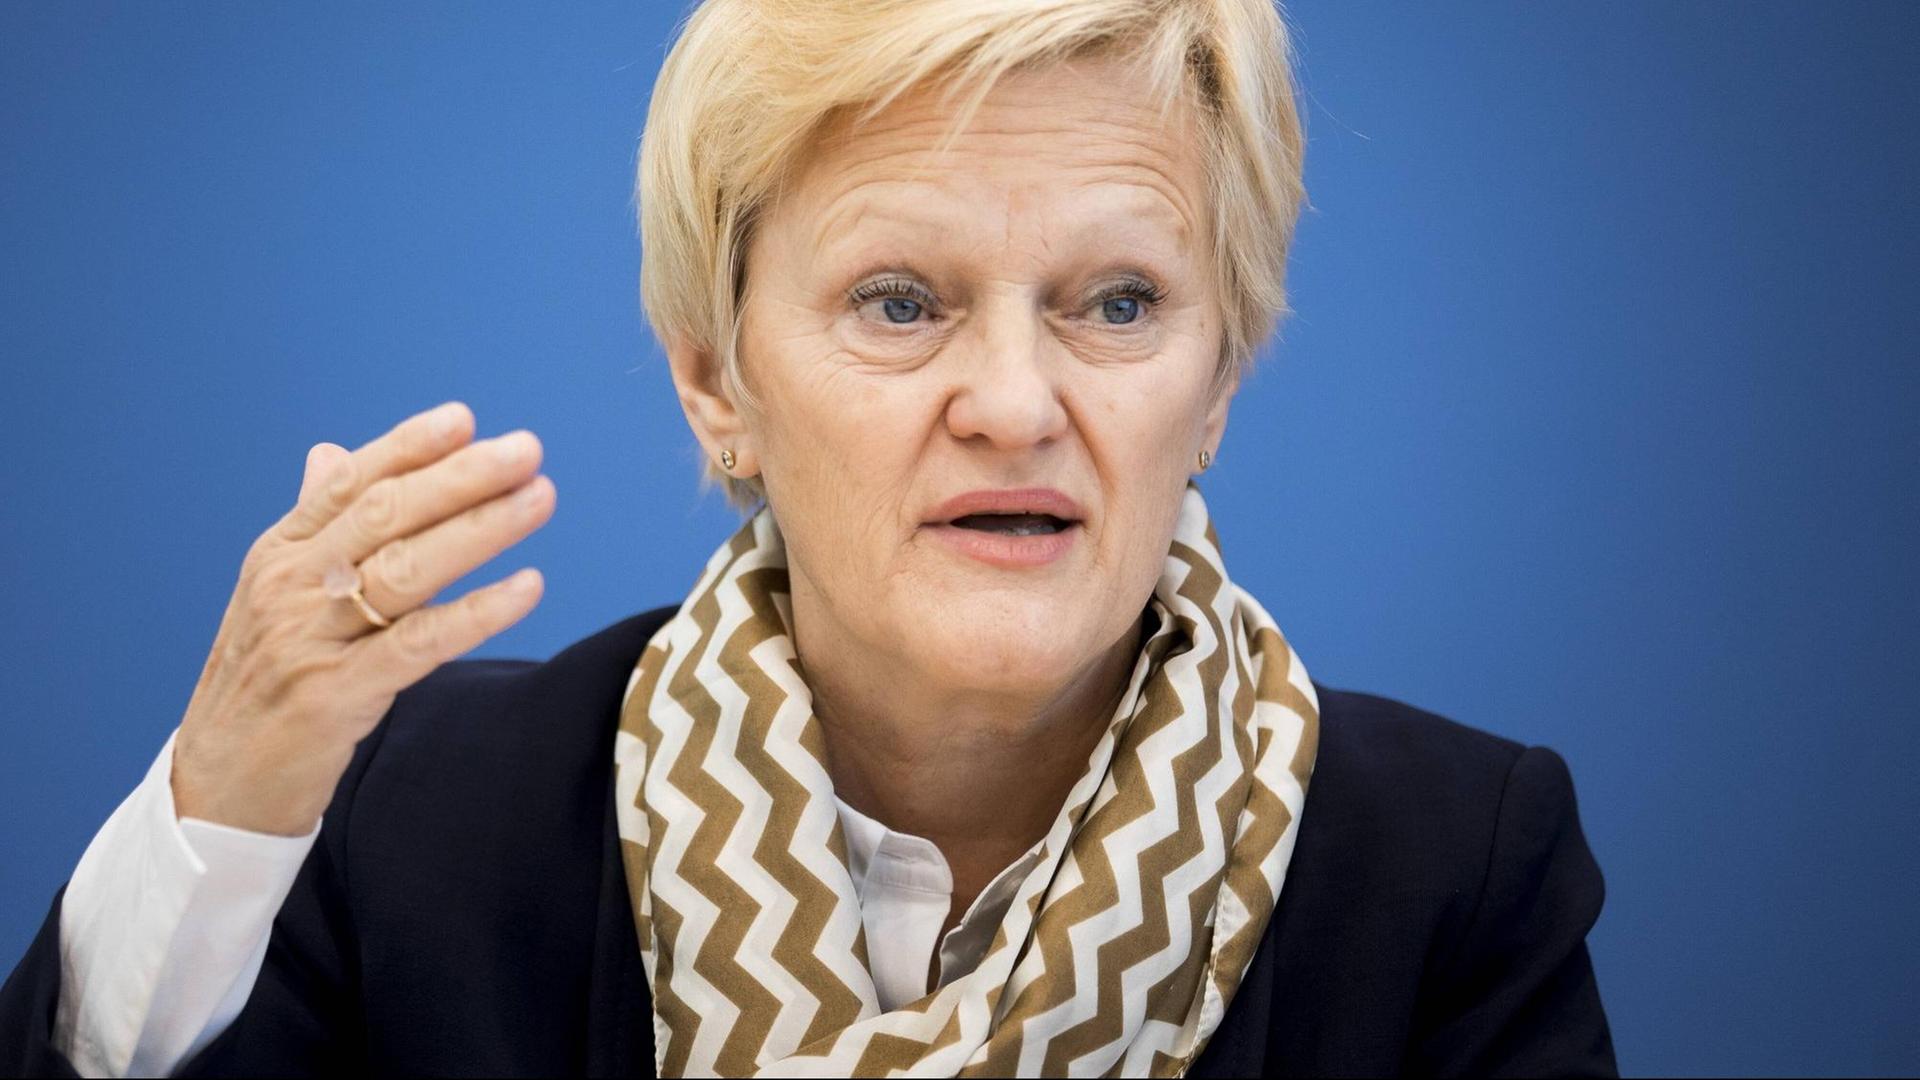 Die Grünen-Bundestagsabgeordnete Renate Künast gestikuliert mit der rechten Hand.